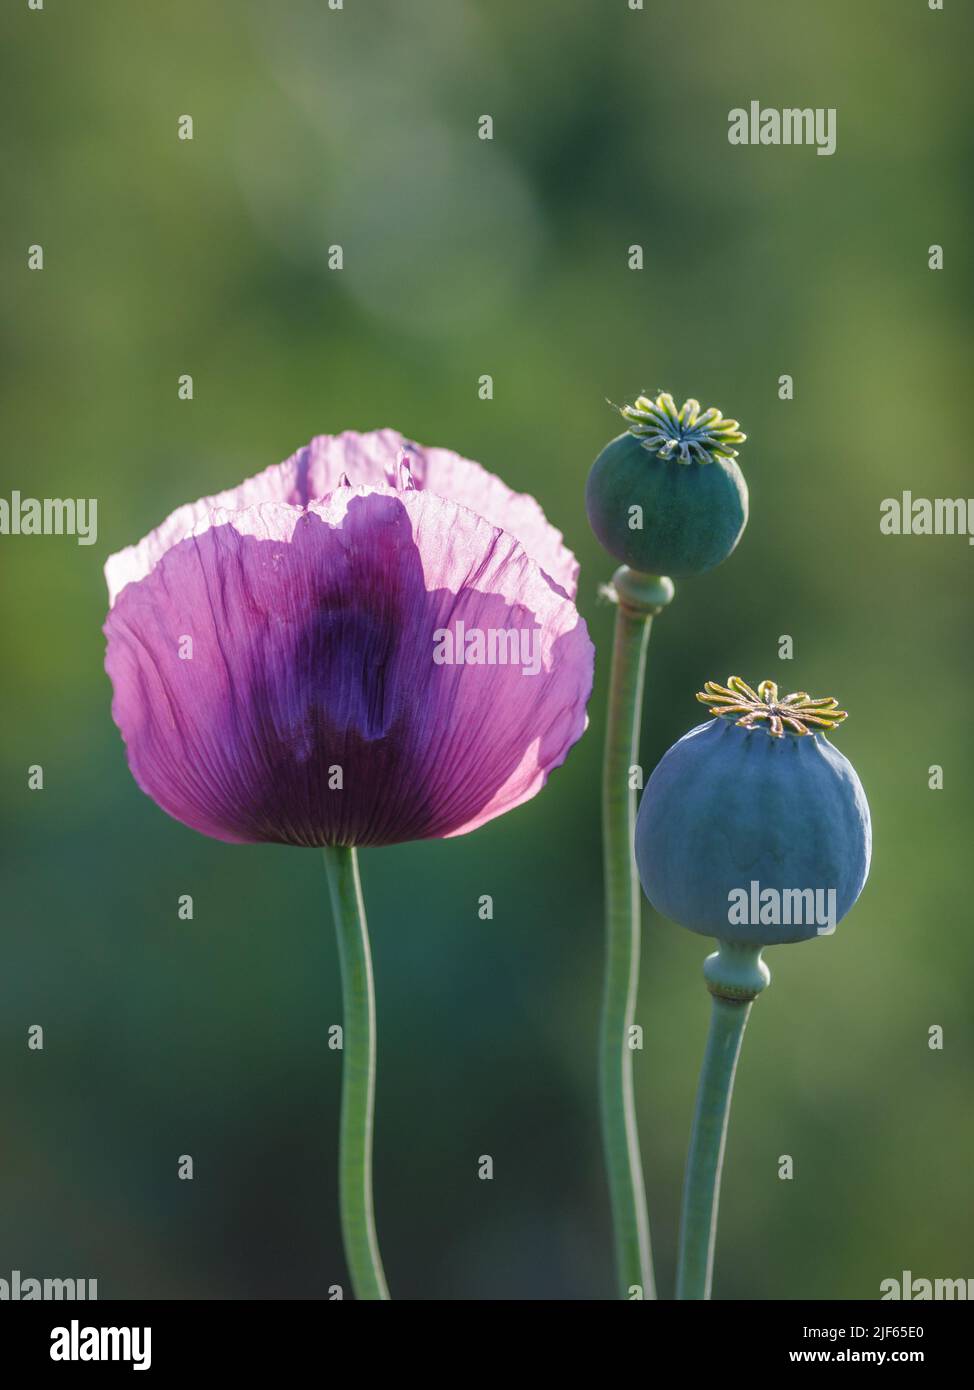 Blühende, violette Mohnblumen im Hintergrund mit unscharfem Feld. Stockfoto